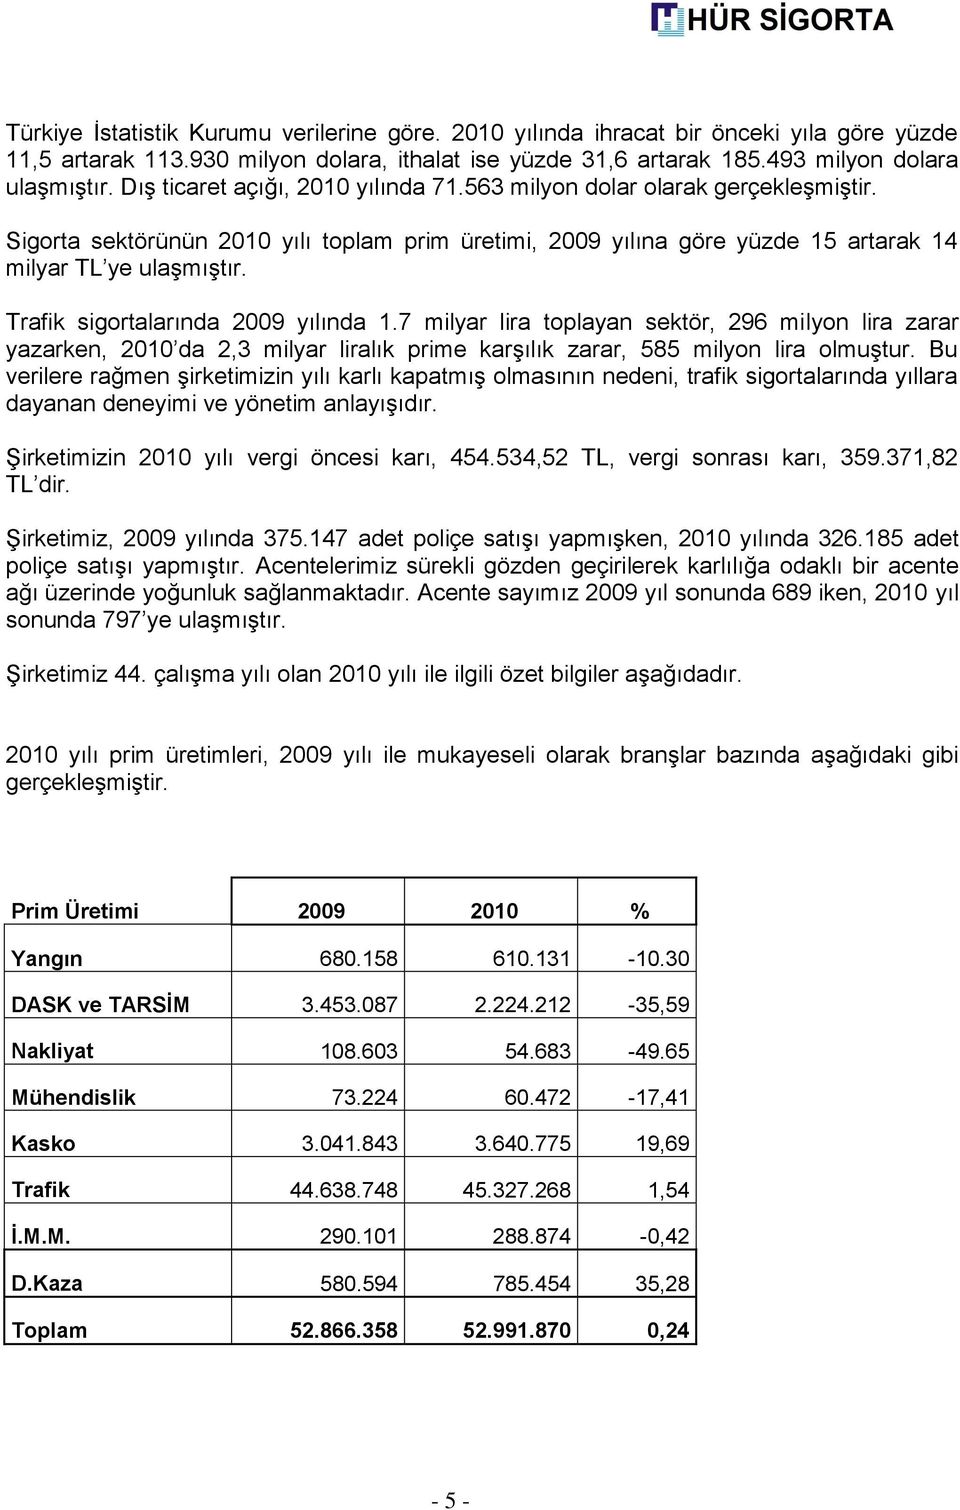 Trafik sigortalarında 2009 yılında 1.7 milyar lira toplayan sektör, 296 milyon lira zarar yazarken, 2010 da 2,3 milyar liralık prime karģılık zarar, 585 milyon lira olmuģtur.